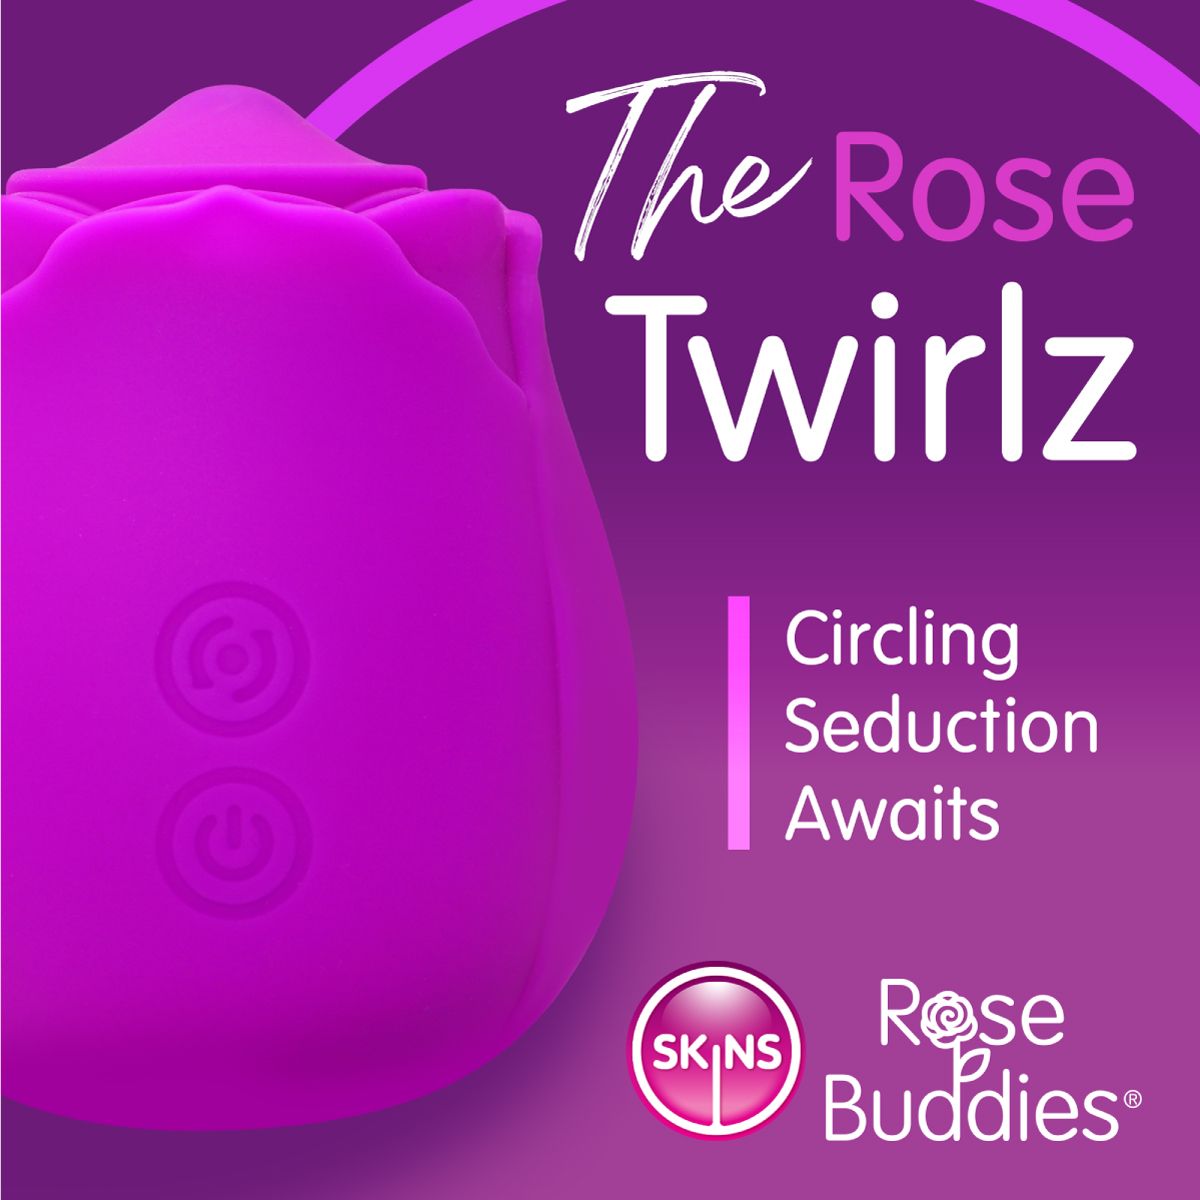 Skins Rose Buddies - The Rose Twirlz